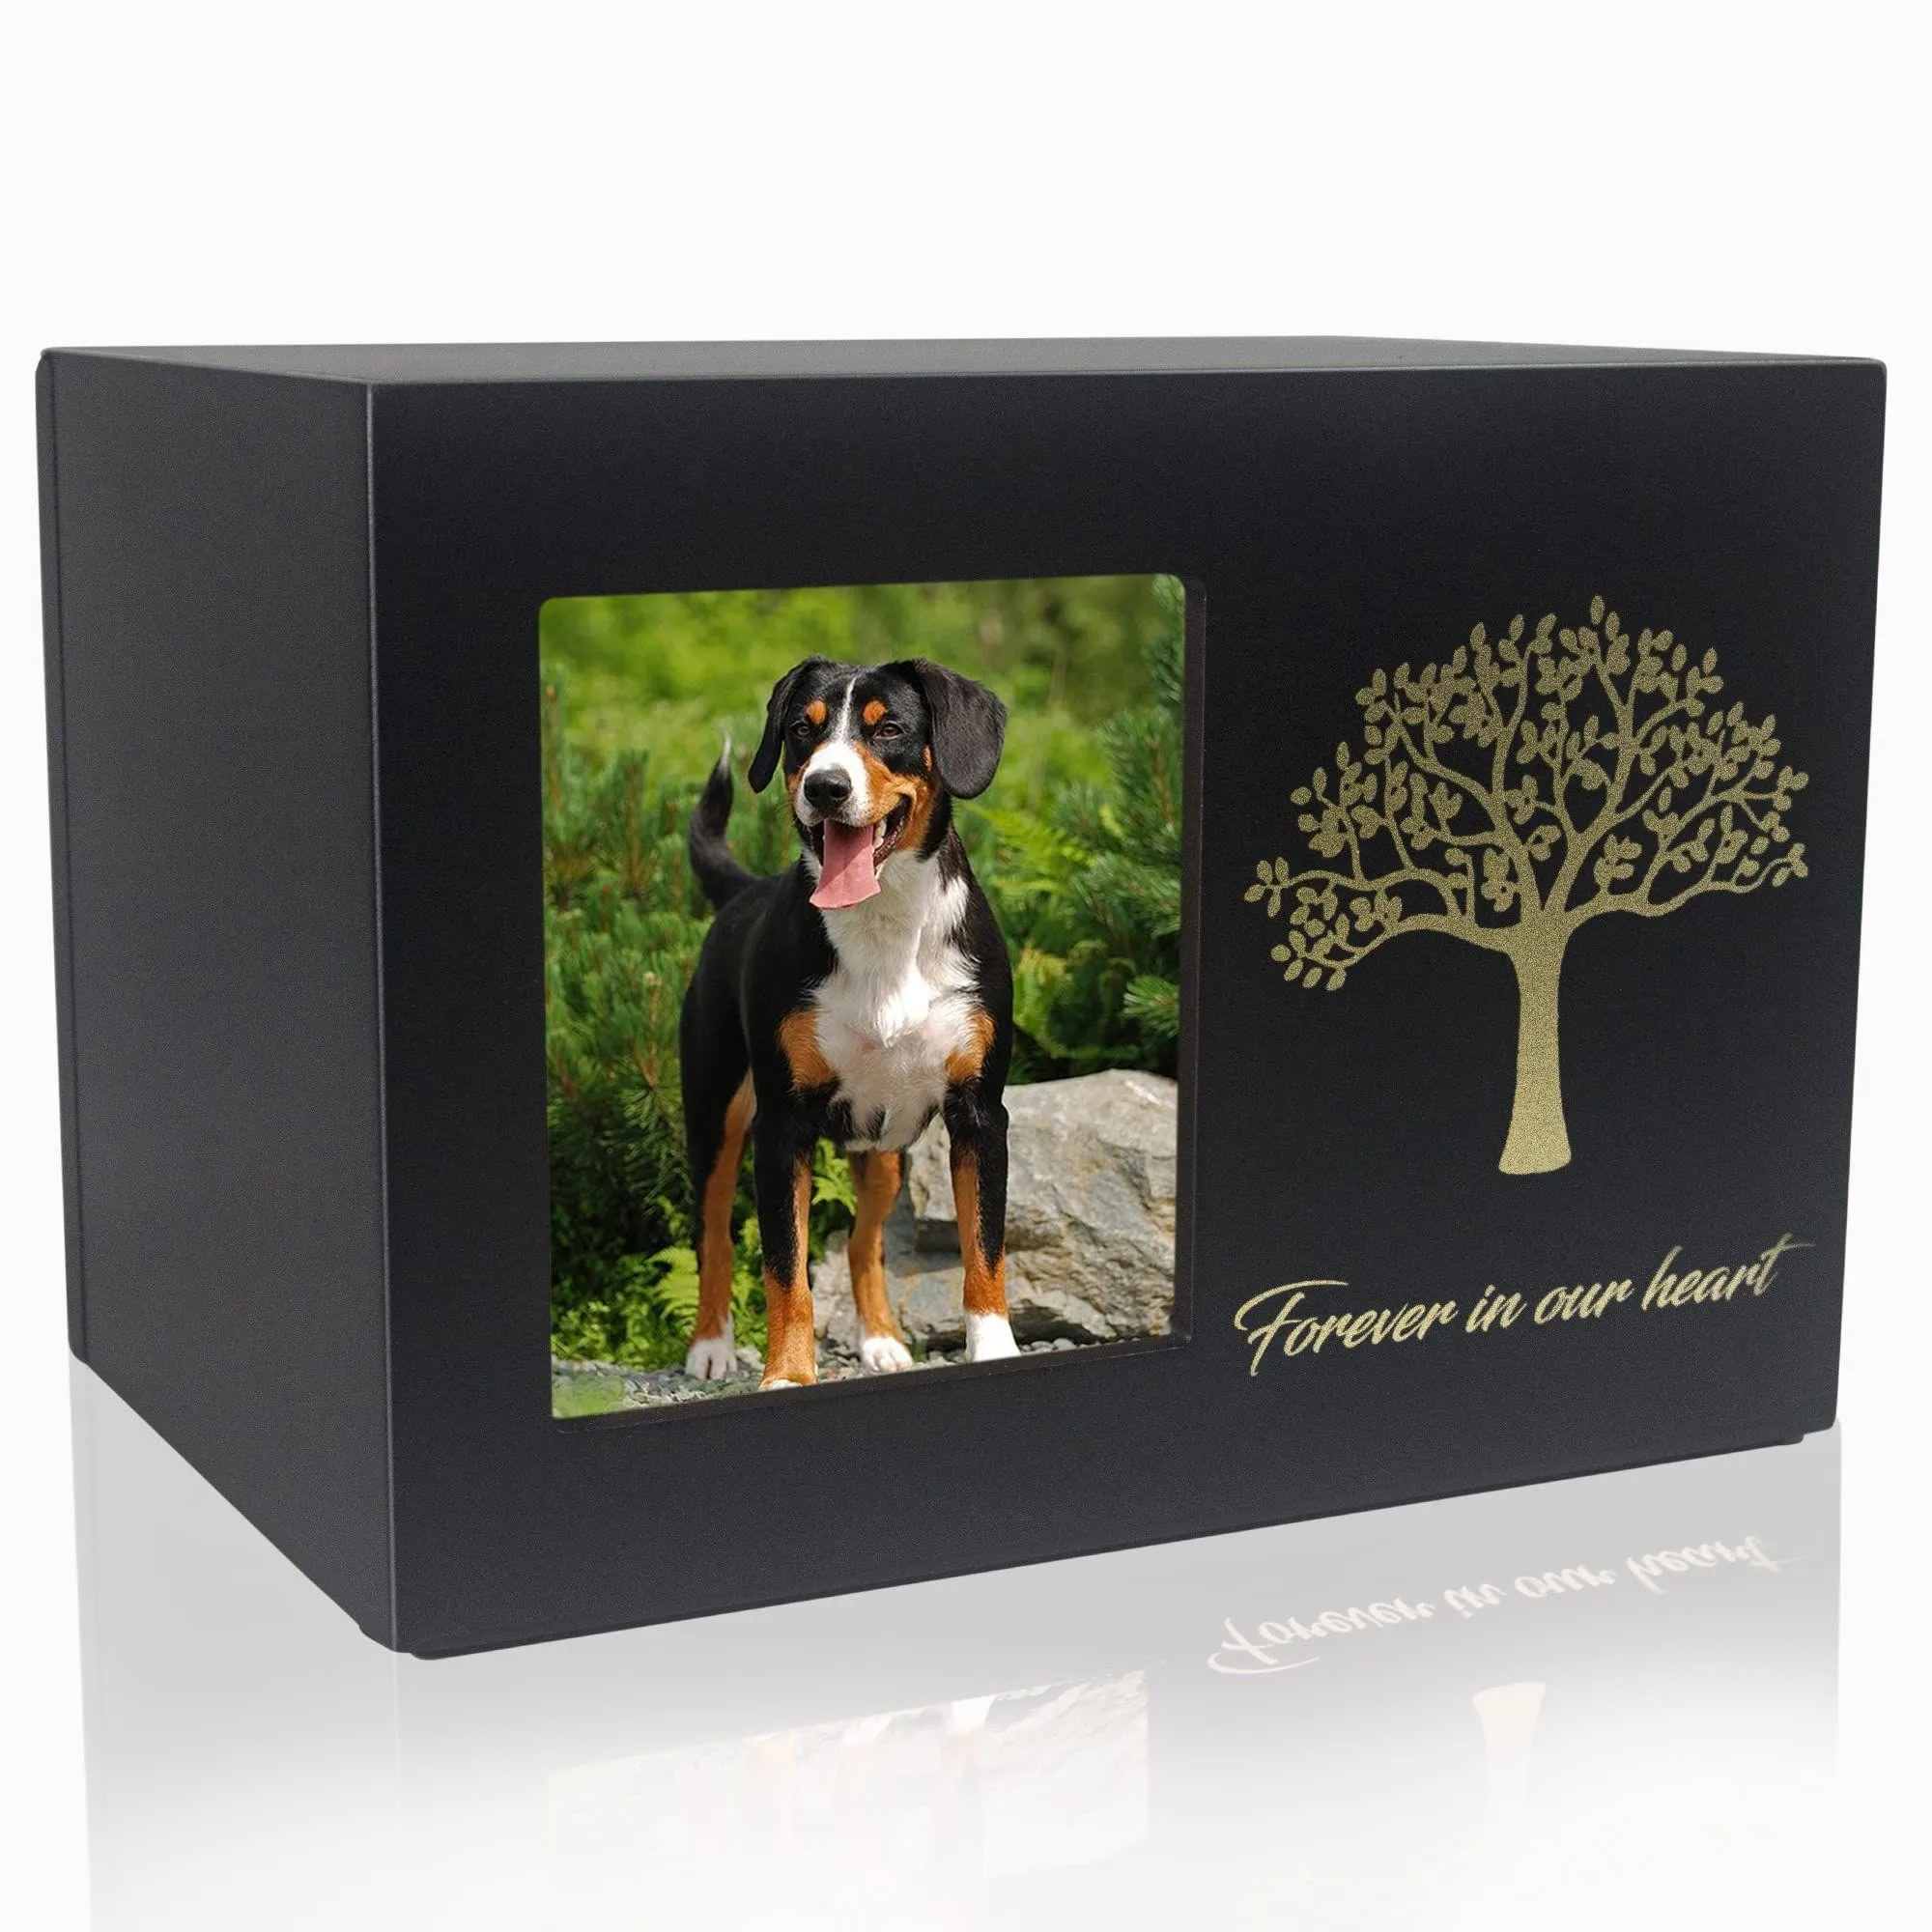 Inne pies zaopatruje urny pamiątkowe dla psów lub kotów Ashes drewniane kremacja z spersonalizowaną ramą pensjonat utrata pudełka sympatia rem dhn6m